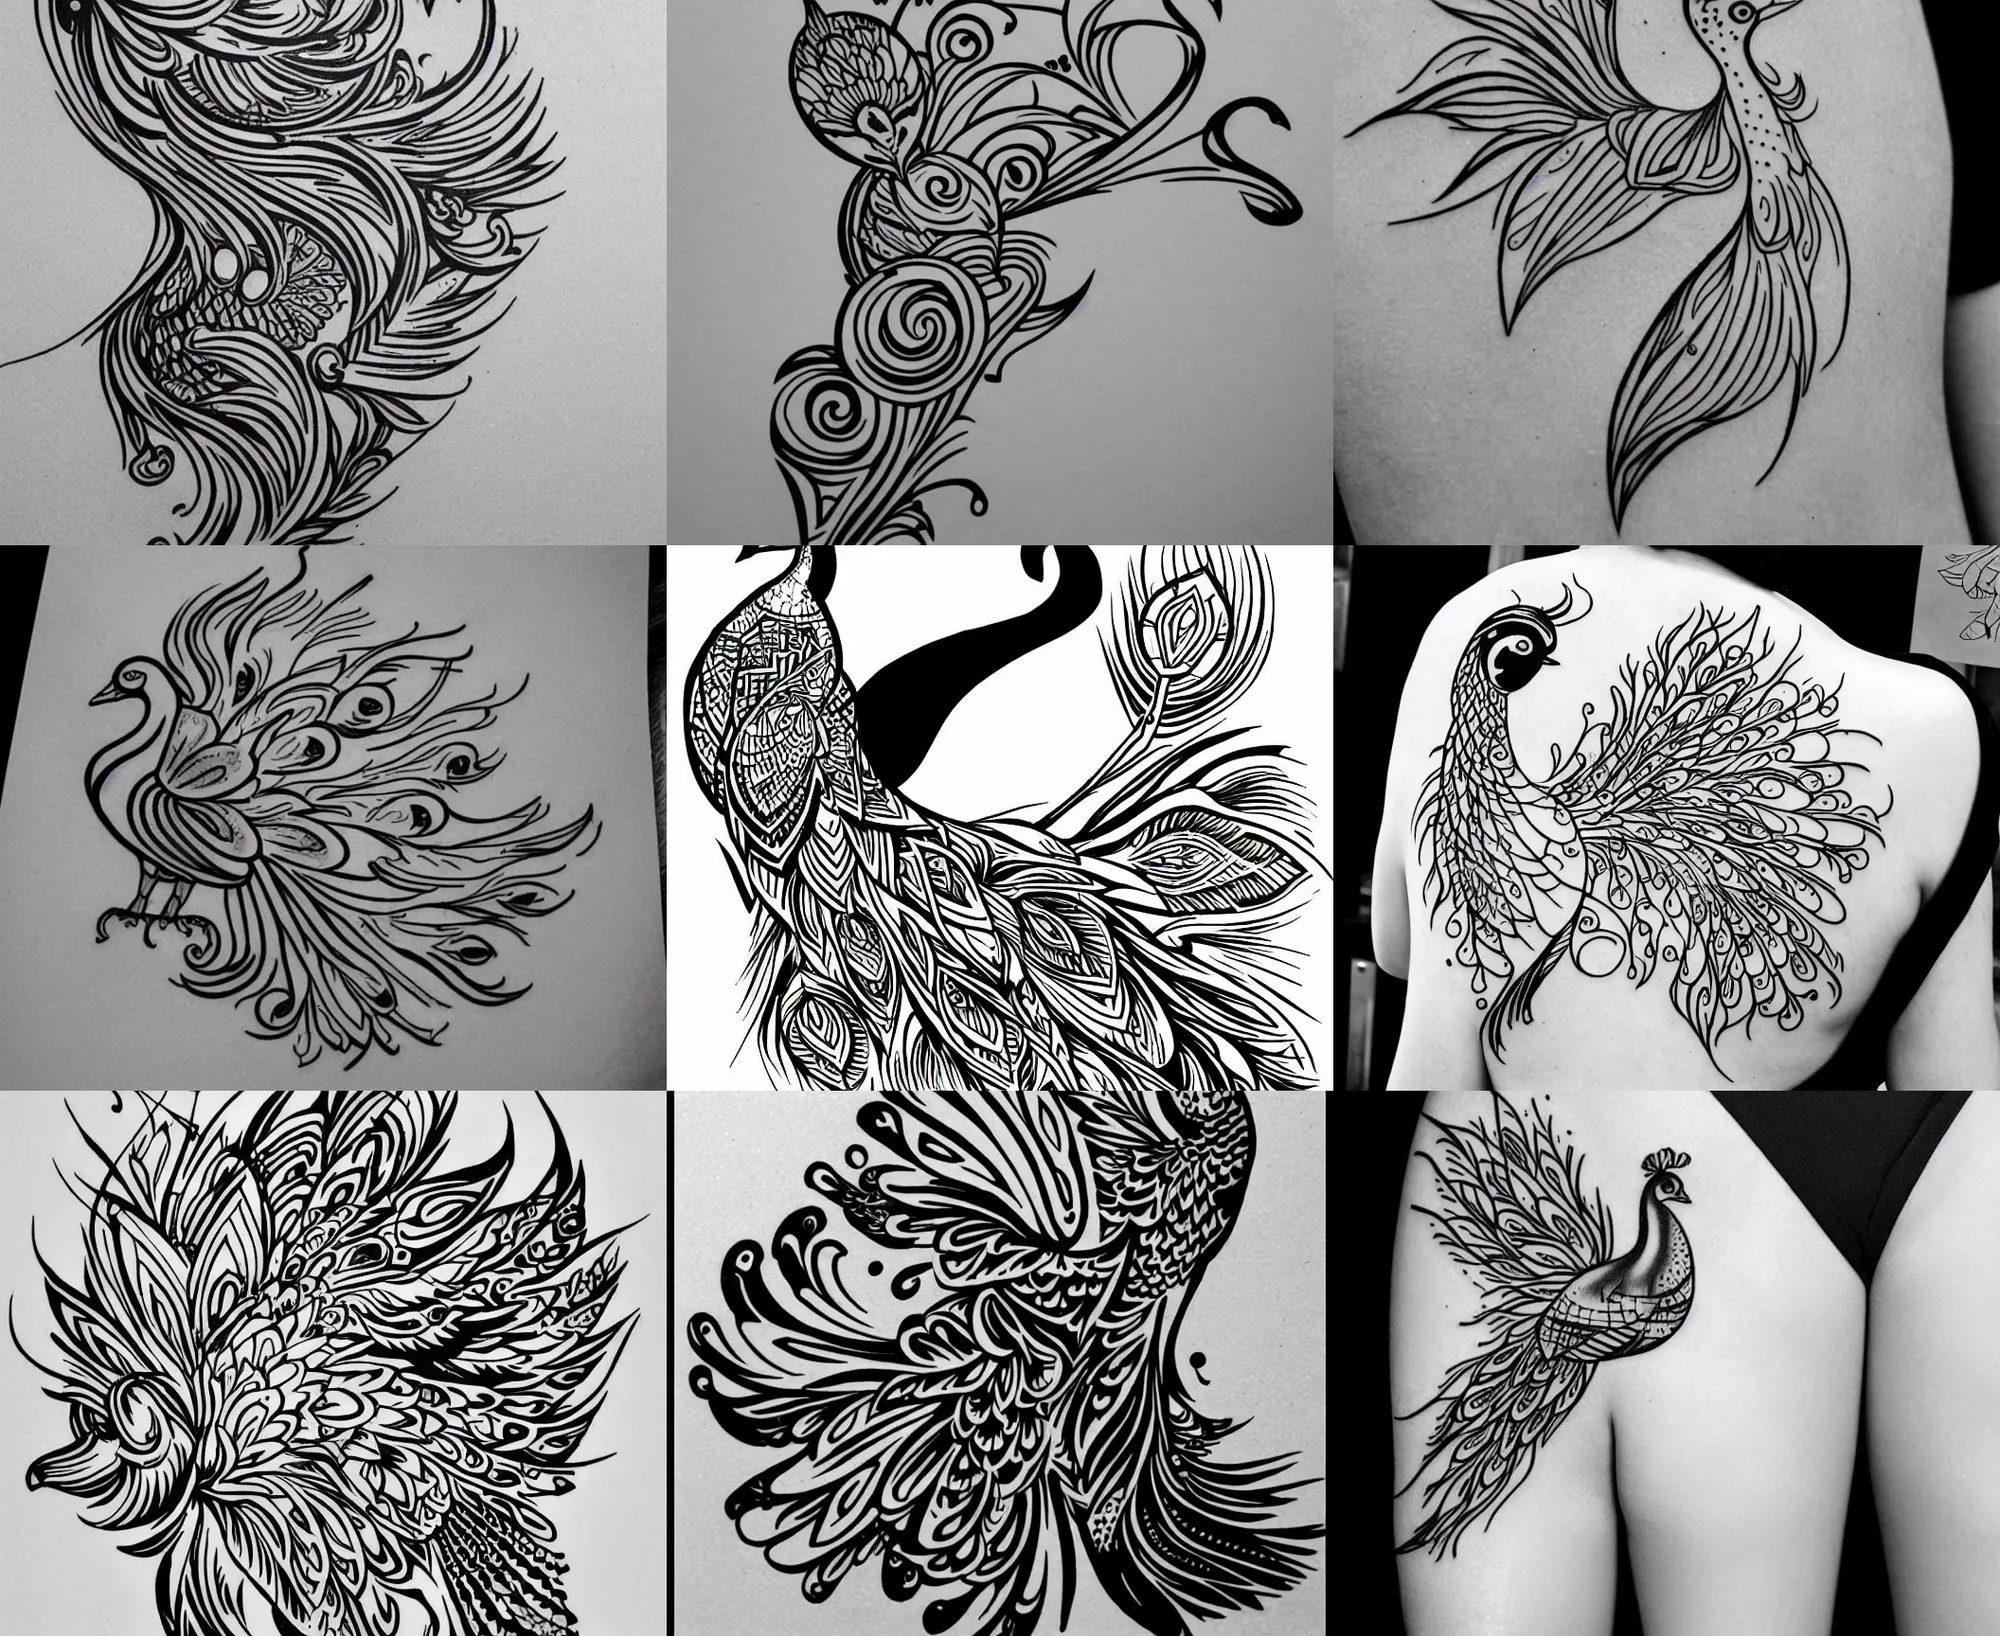 Tattoo uploaded by Rtattoo studio • #Feathertattoo peacockFeathertattoo  #colourful #Feather #feathertattoo #tattoodesign #tattooidea  #peacockfeathertattoo #smallpeacockfeathertattoo #tattoodesign #girltattoo  #Bansurifeathertattoo #peacock ...